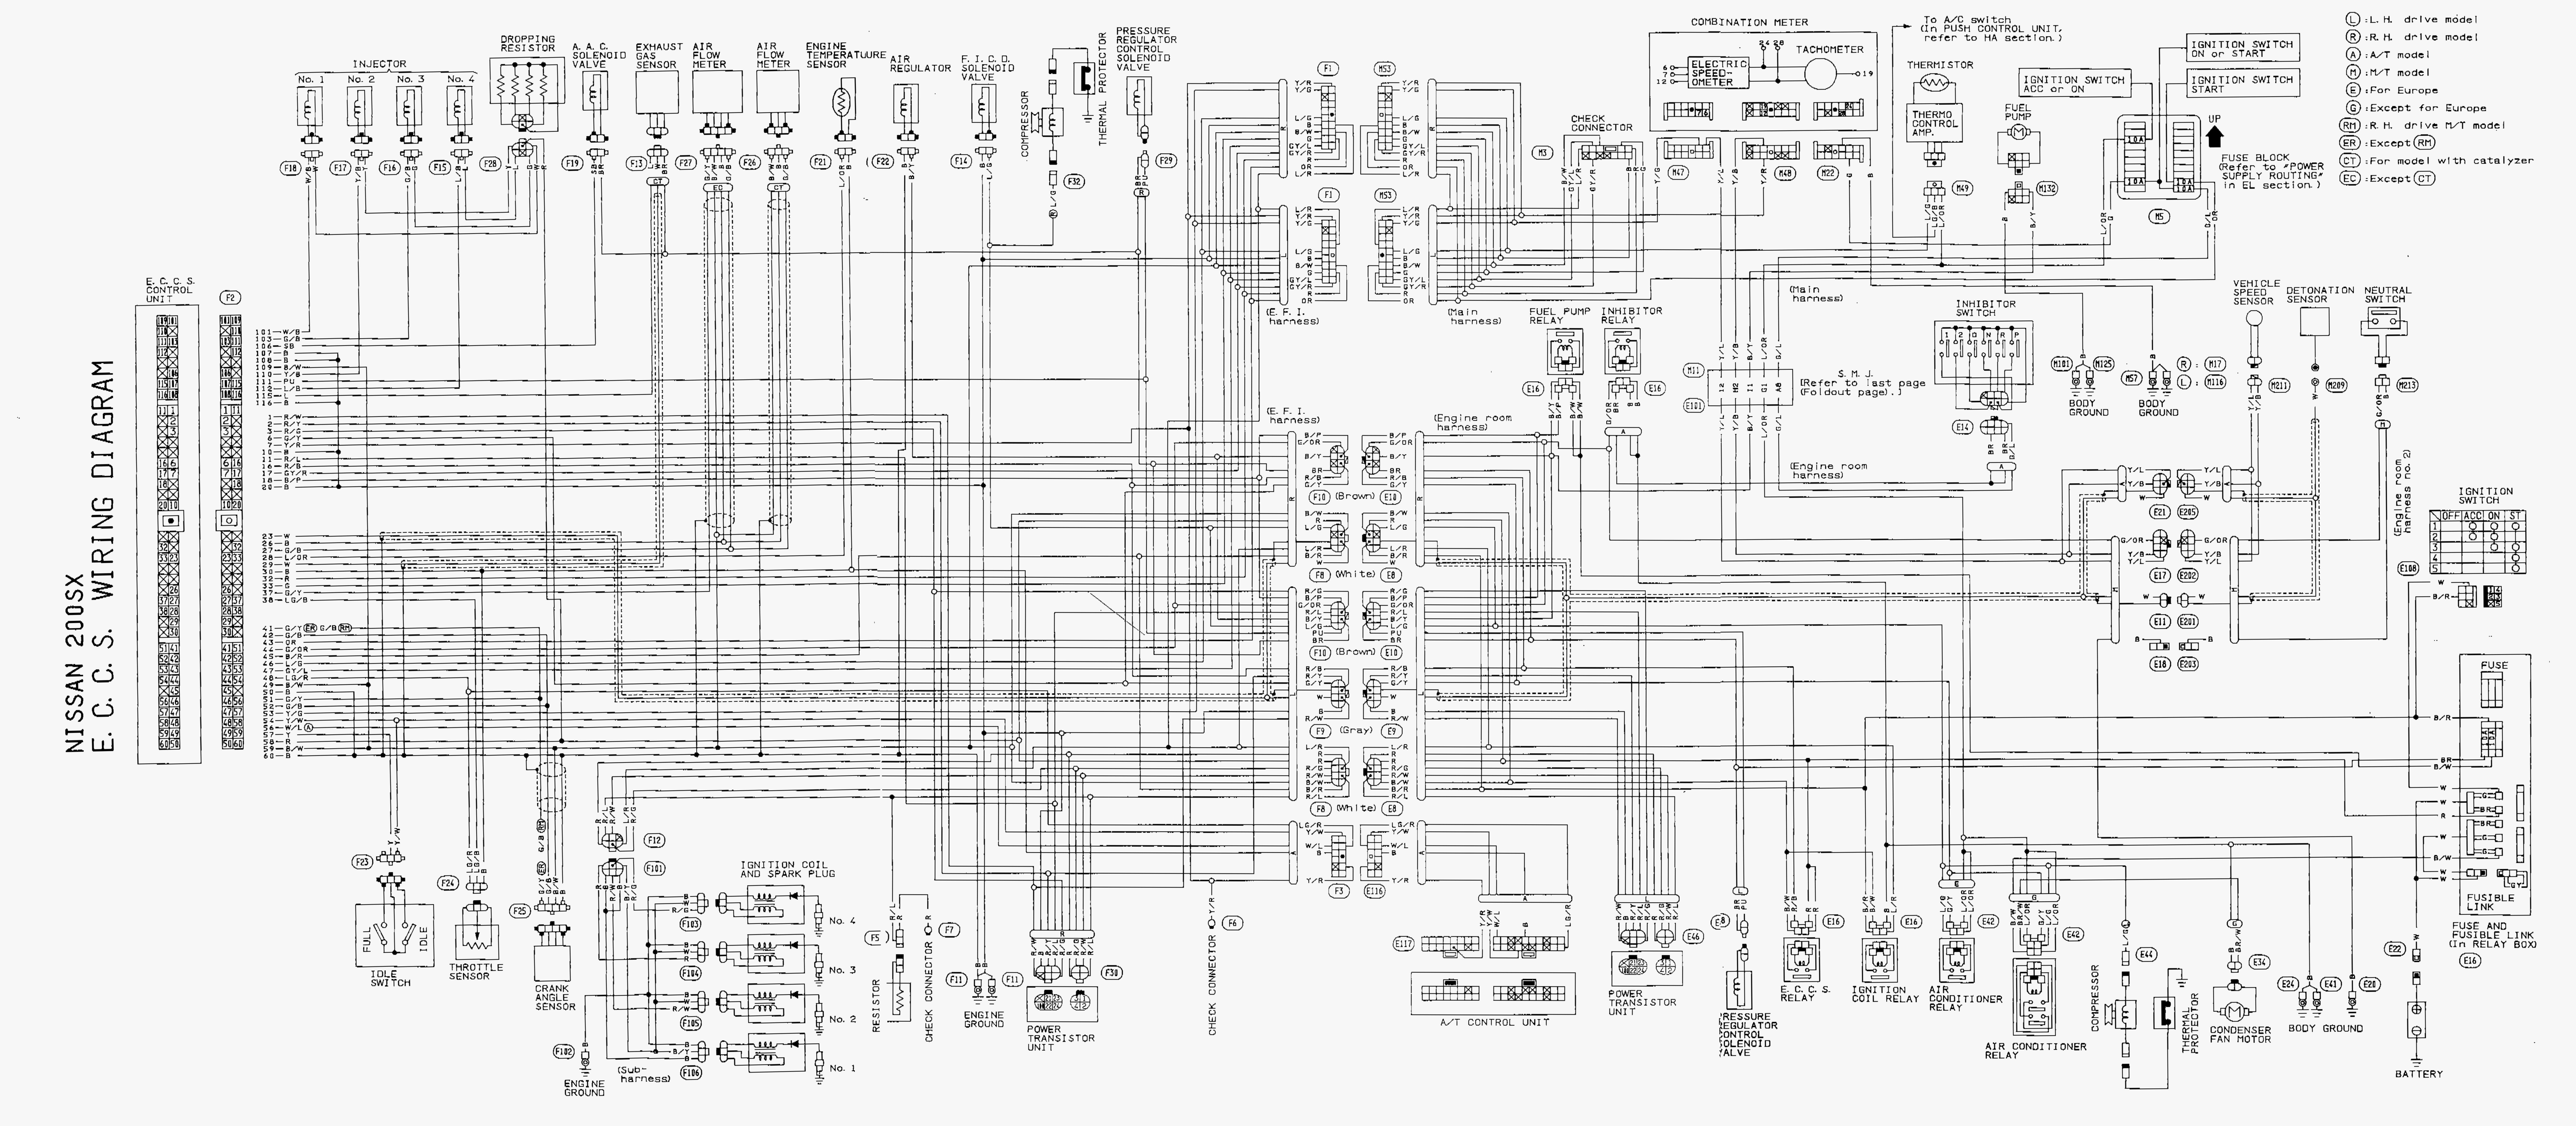 Wiring Manual PDF: 180sx Wiring Diagram